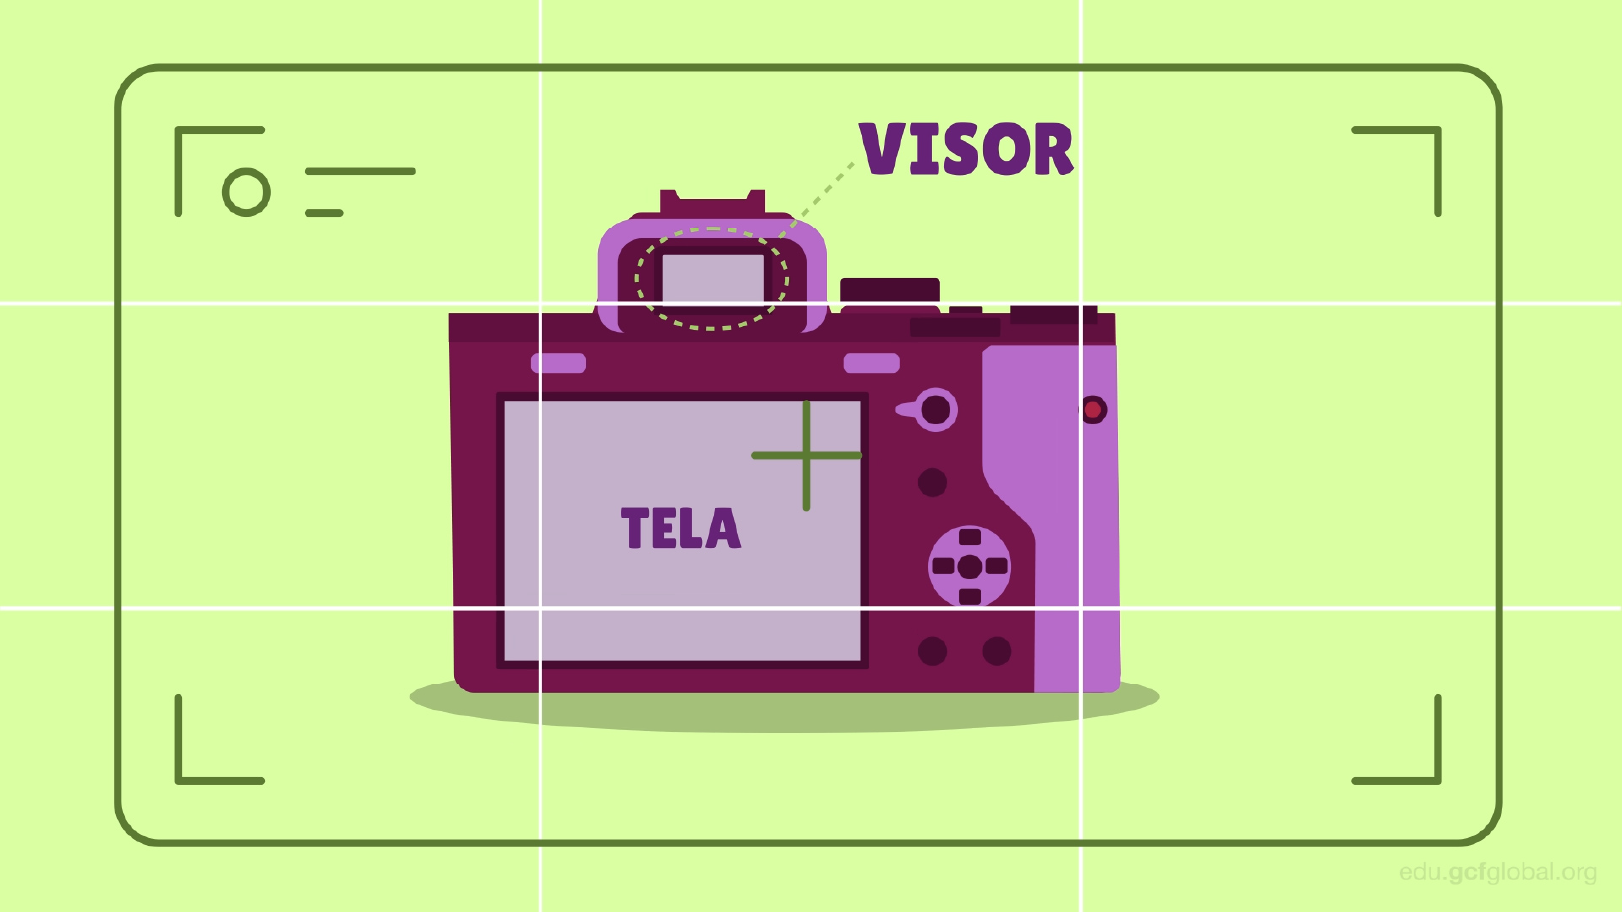 Quais são as partes de uma câmera: visor e tela